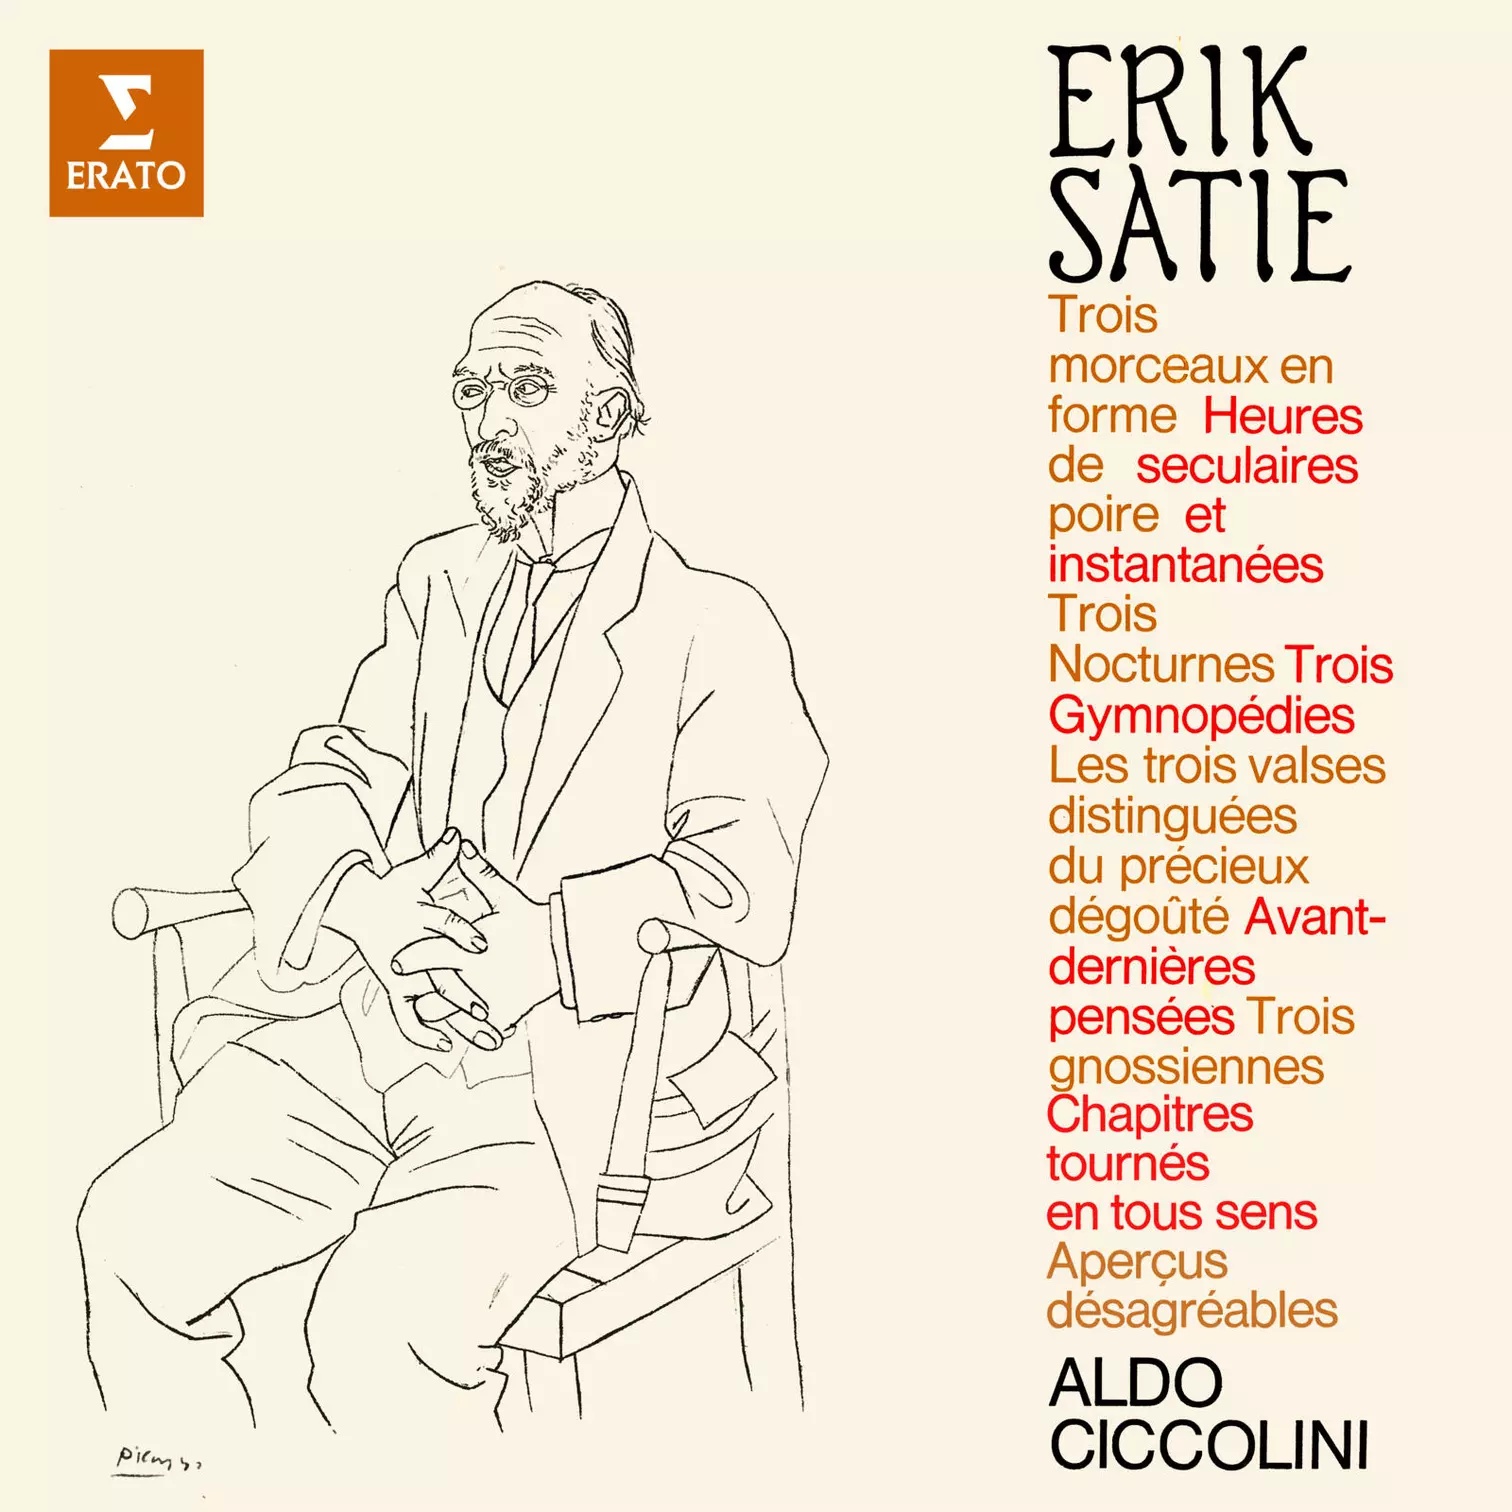 Satie: Morceaux en forme de poire, Heures séculaires et instantanées, Gymnopédies, Nocturnes, Gnossiennes etc